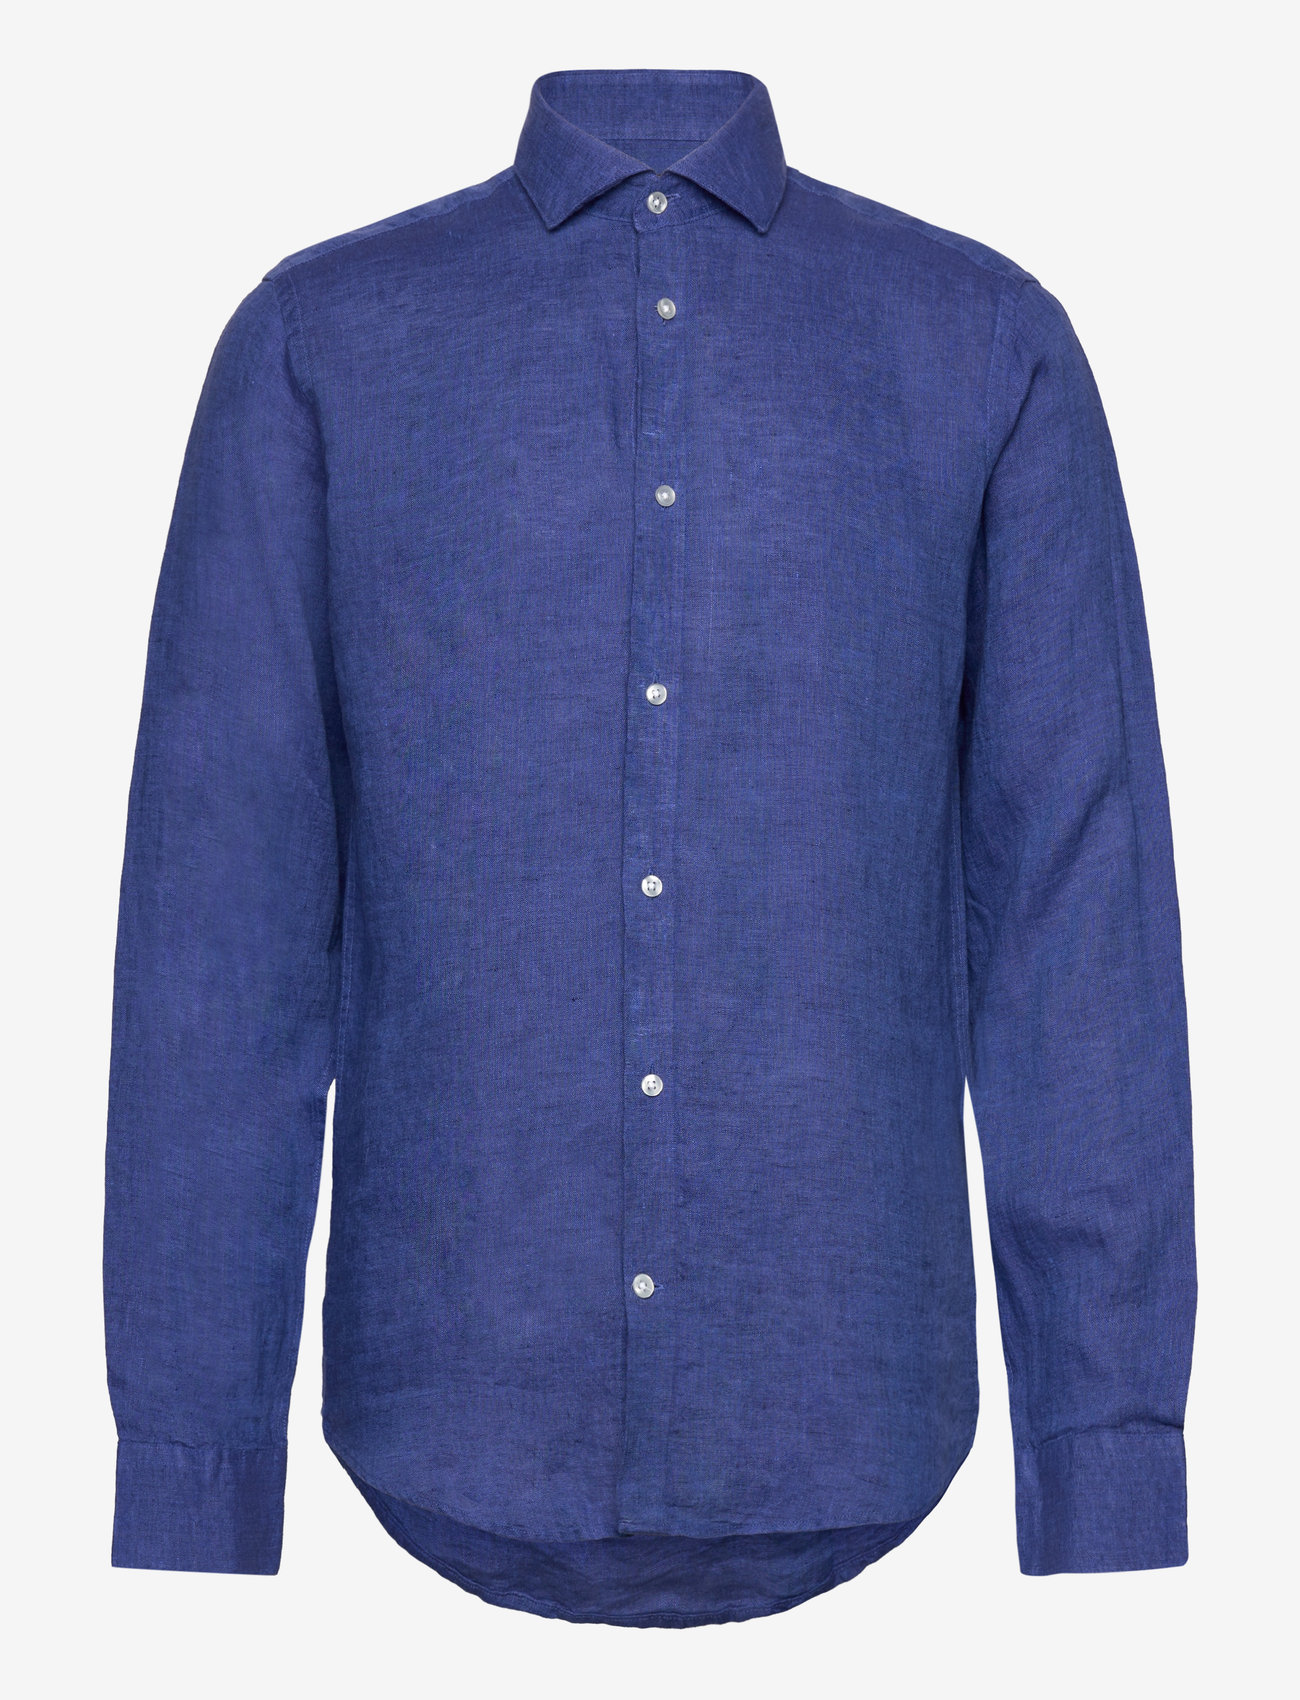 Bruun & Stengade - BS Bilbao Casual Modern Fit Shirt - linen shirts - blue - 0